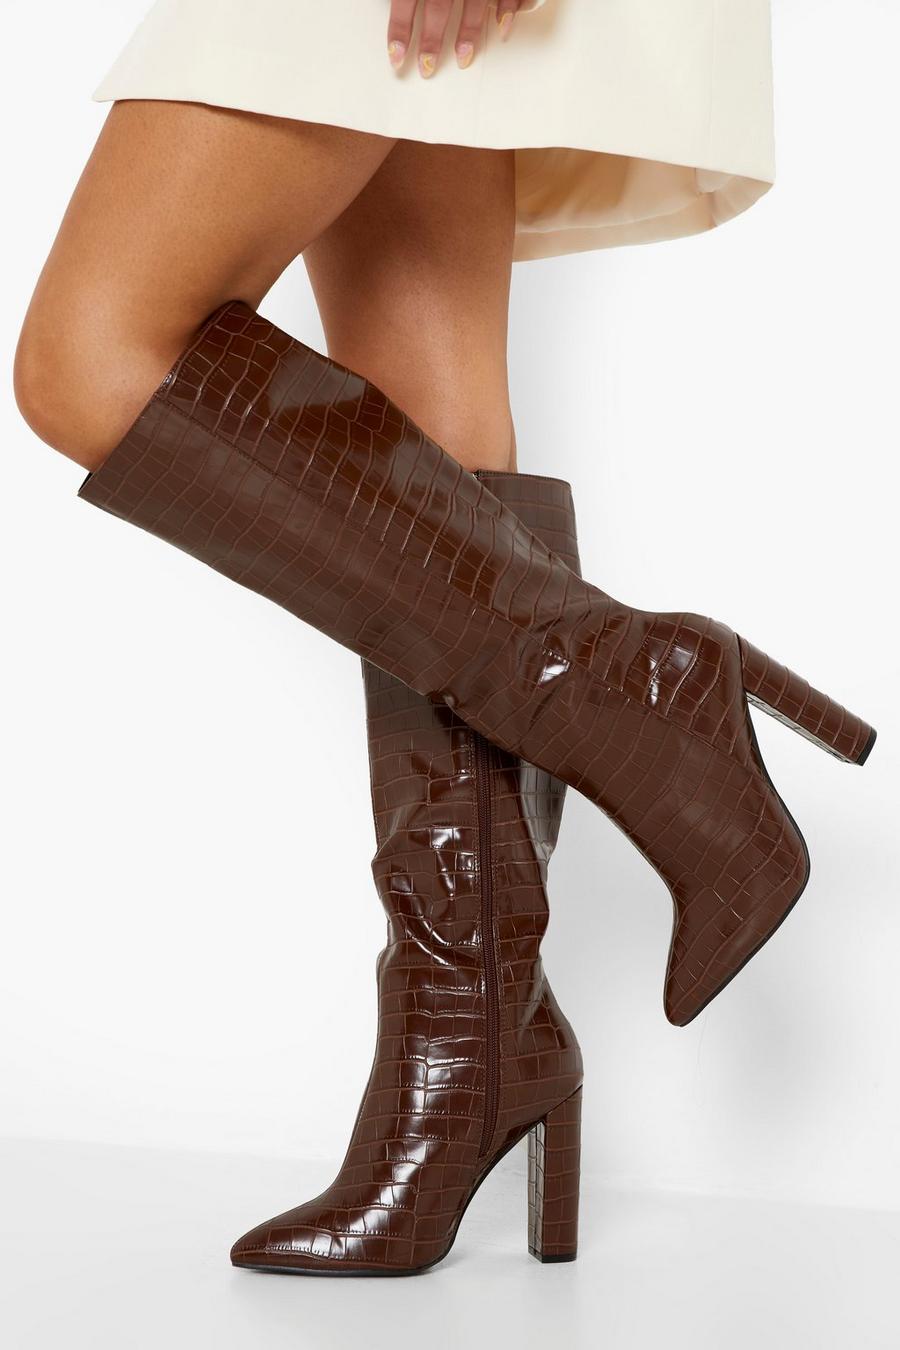 שוקולד marrone מגפיים בגובה הברך עם אפקט עור תנין וקצה מחודד, לרגל רחבה